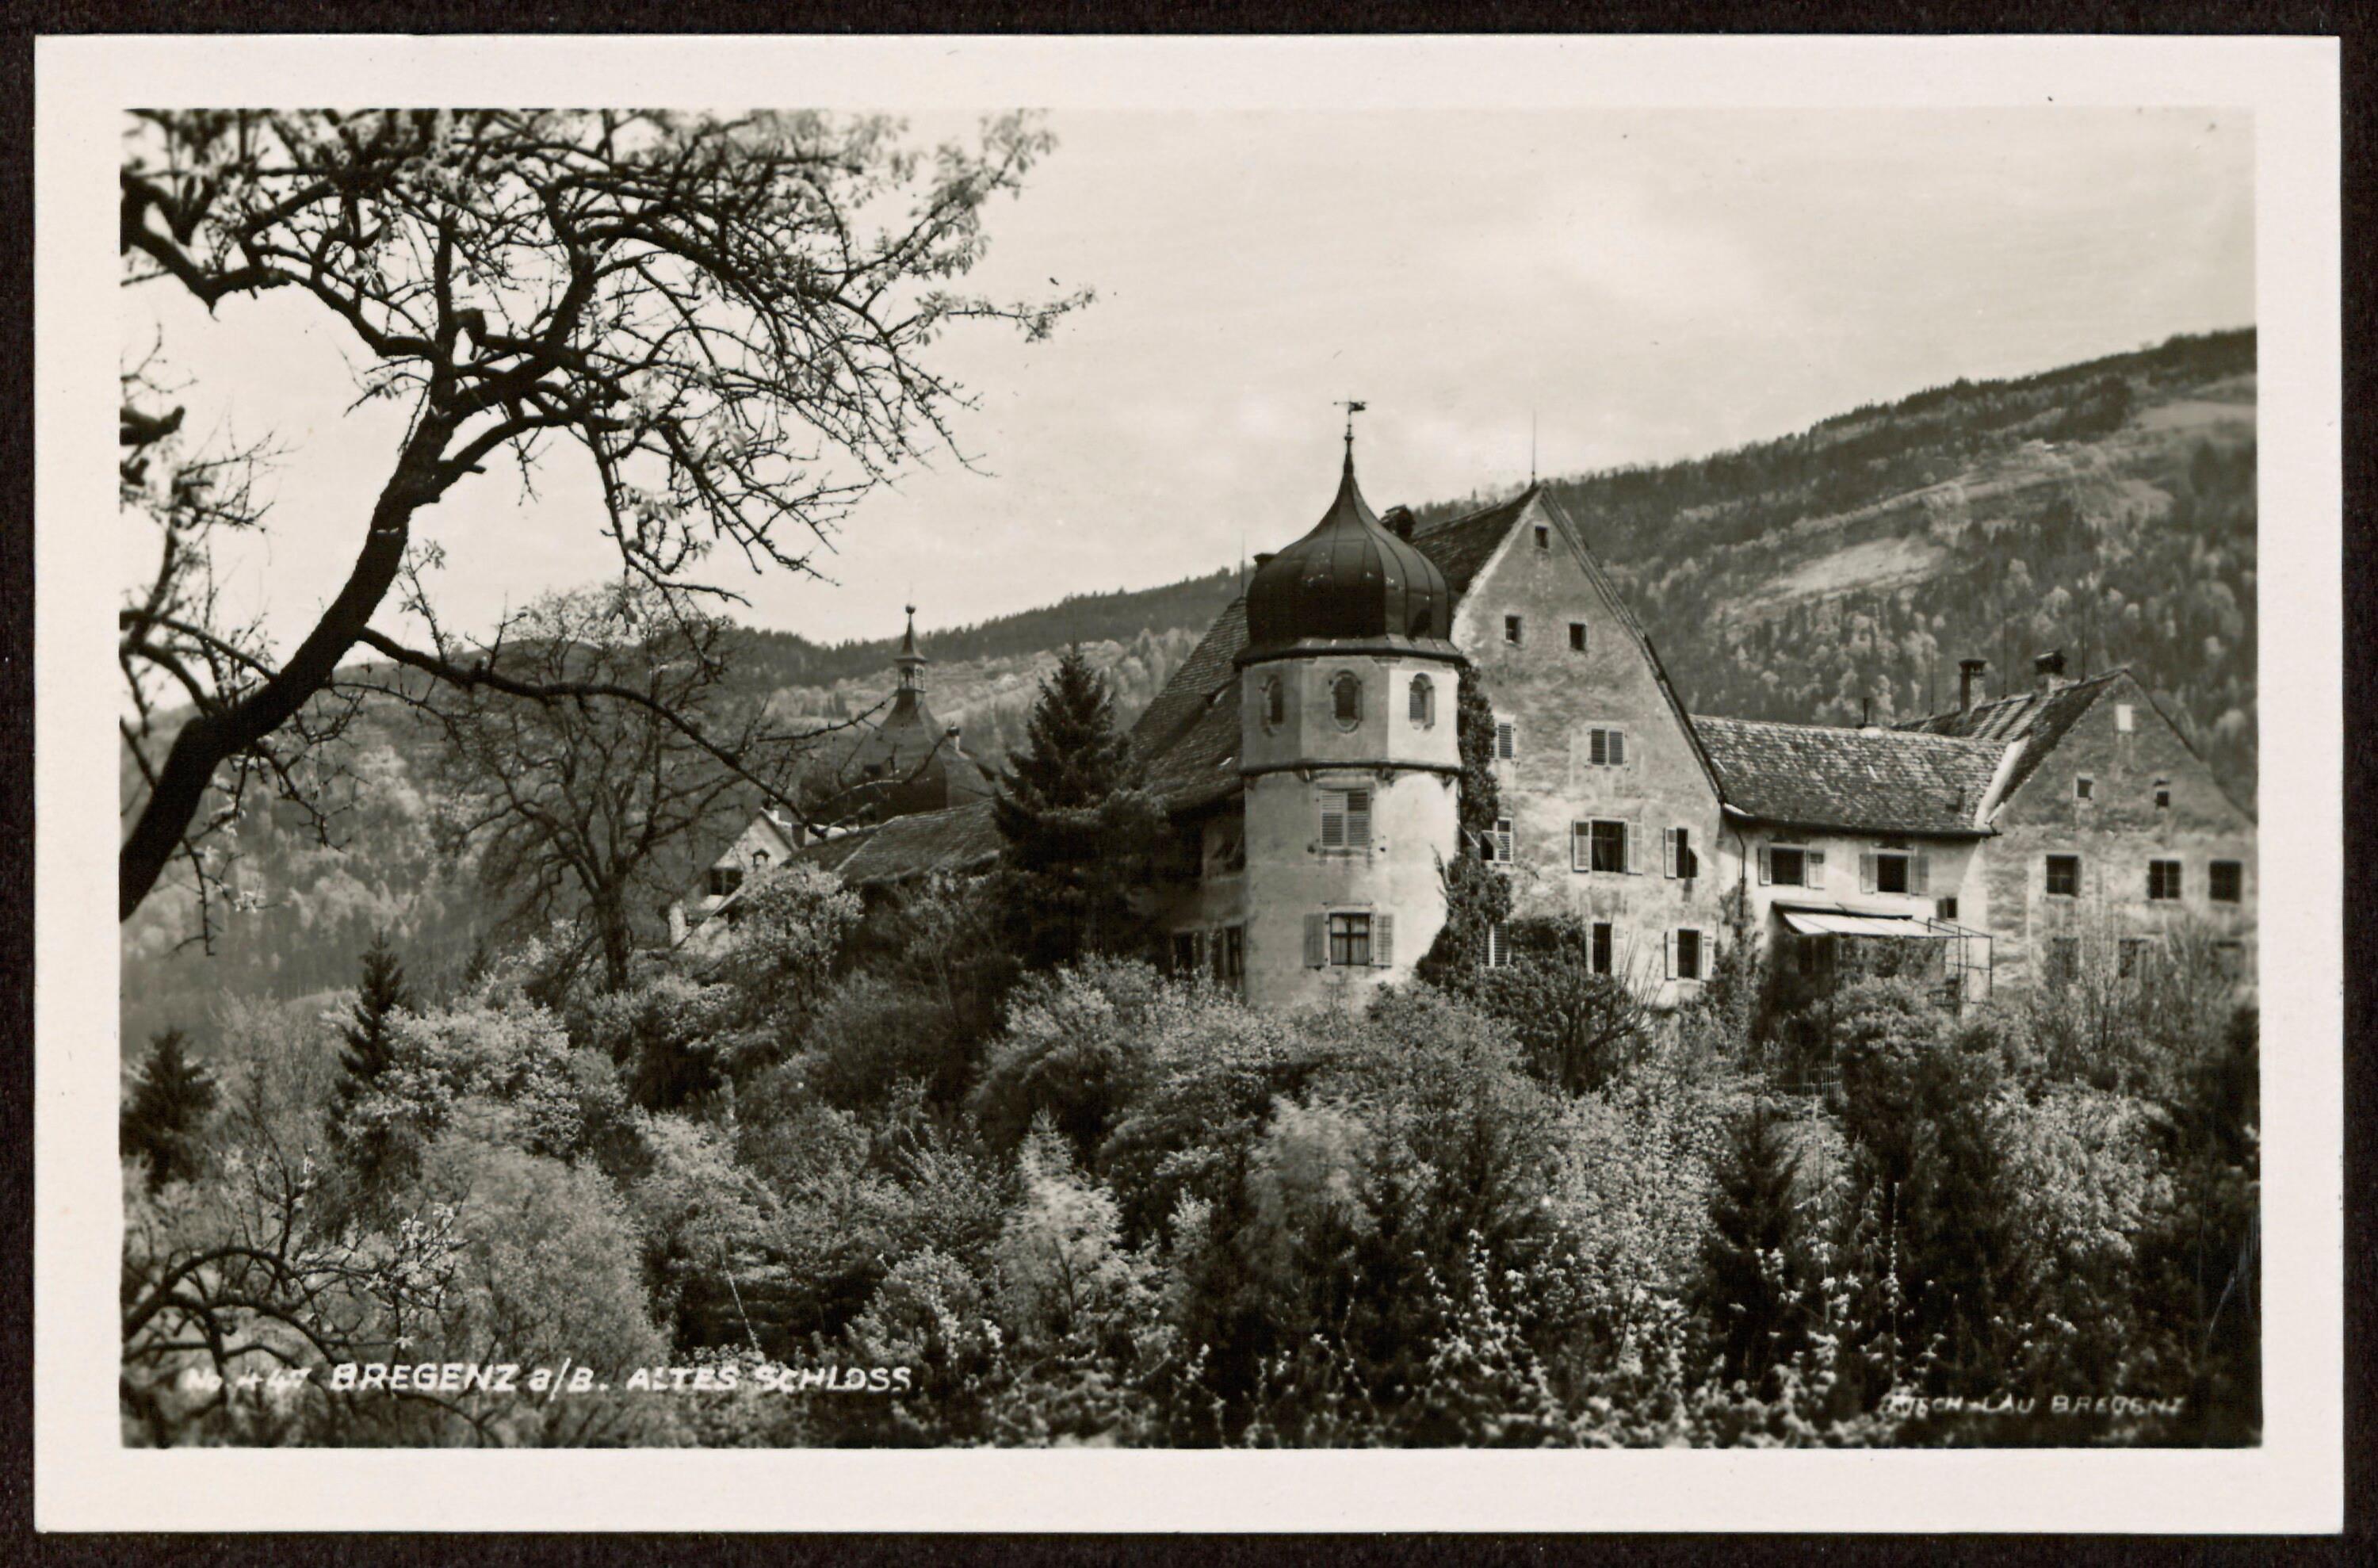 Bregenz a/B. Altes Schloss></div>


    <hr>
    <div class=